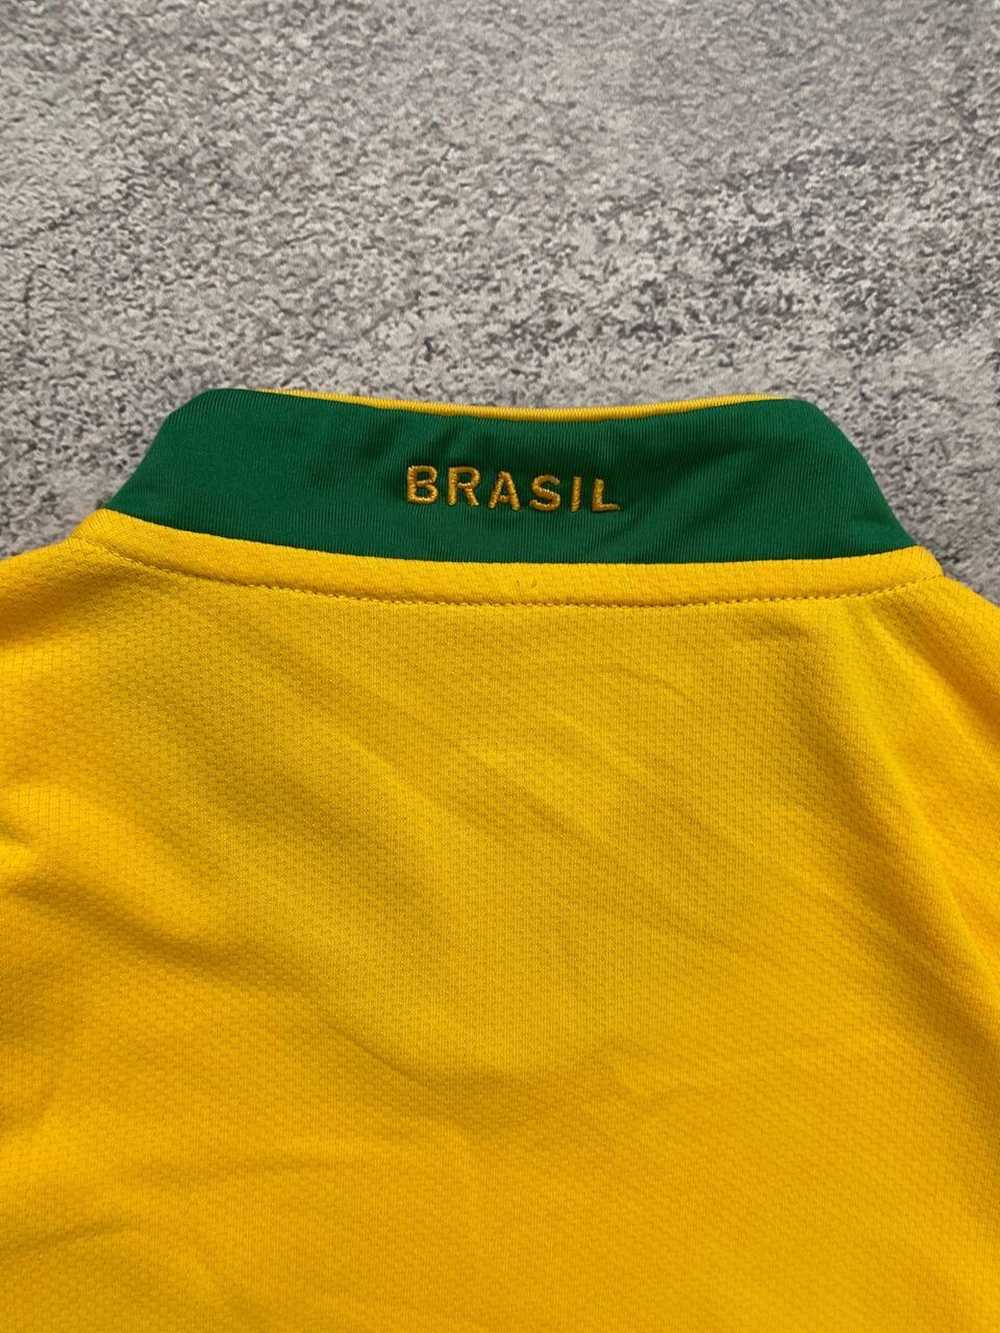 Nike × Soccer Jersey × Vintage Nike Brazil Sports… - image 8